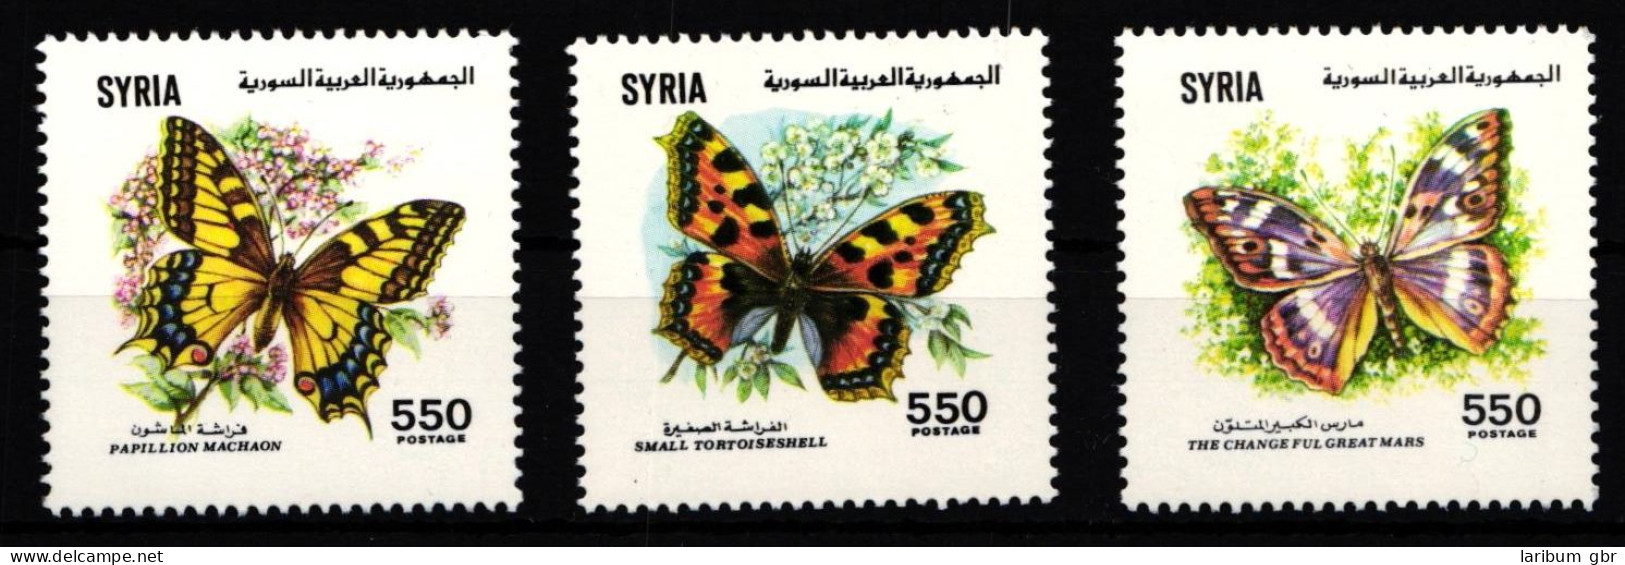 Syrien 1821-1823 Postfrisch Schmetterling #IH068 - Syrië